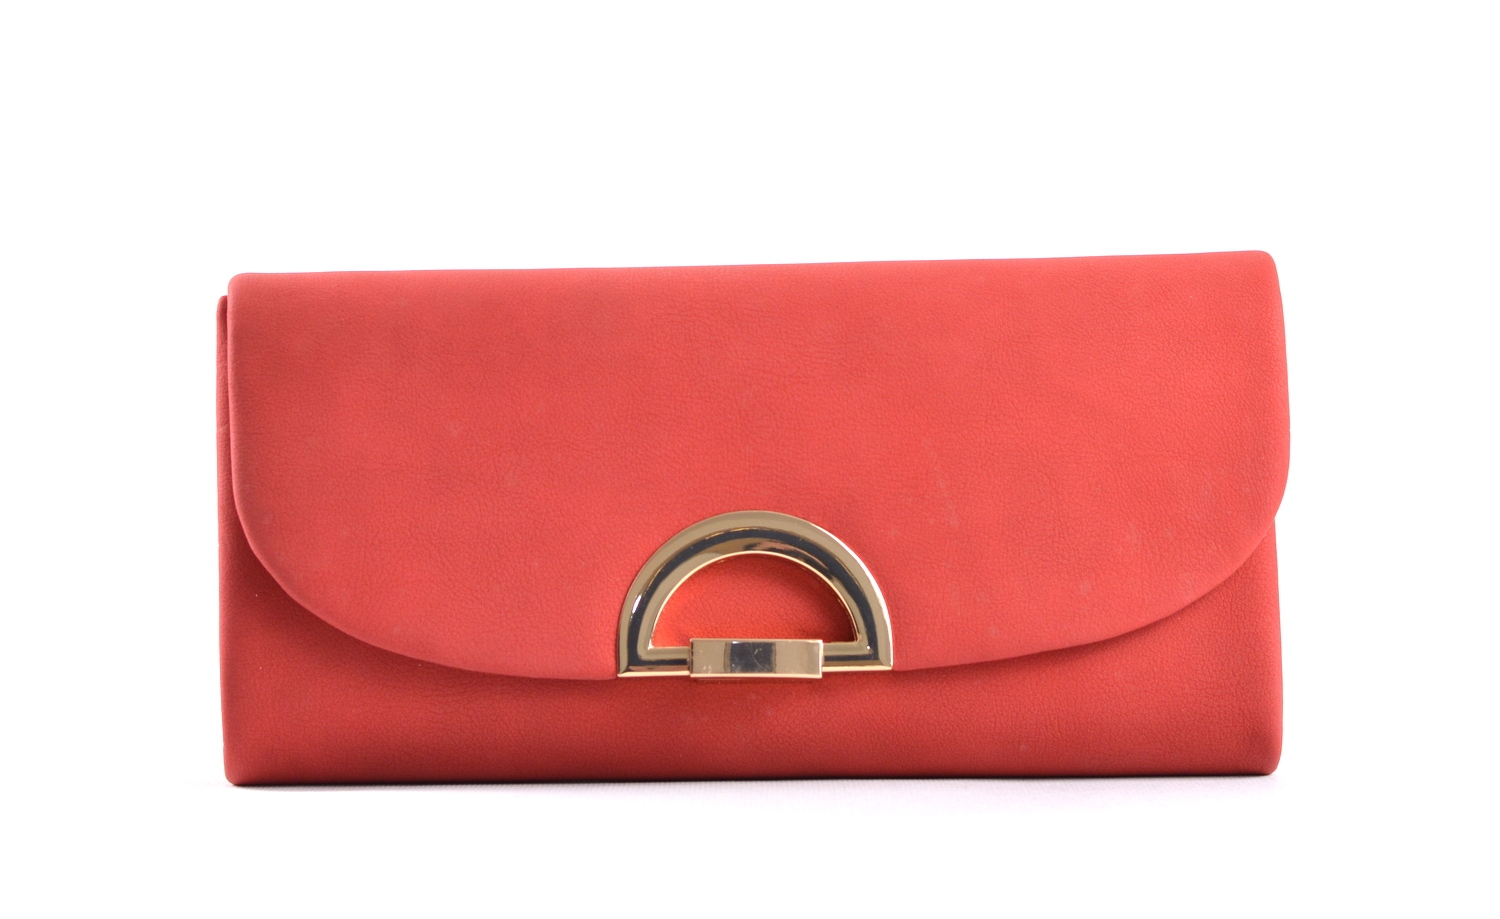 Společenská kabelka - psaníčko s klopnou syntetická červená, 25 x 5 x 13 (IT17-SHD615-00TX)